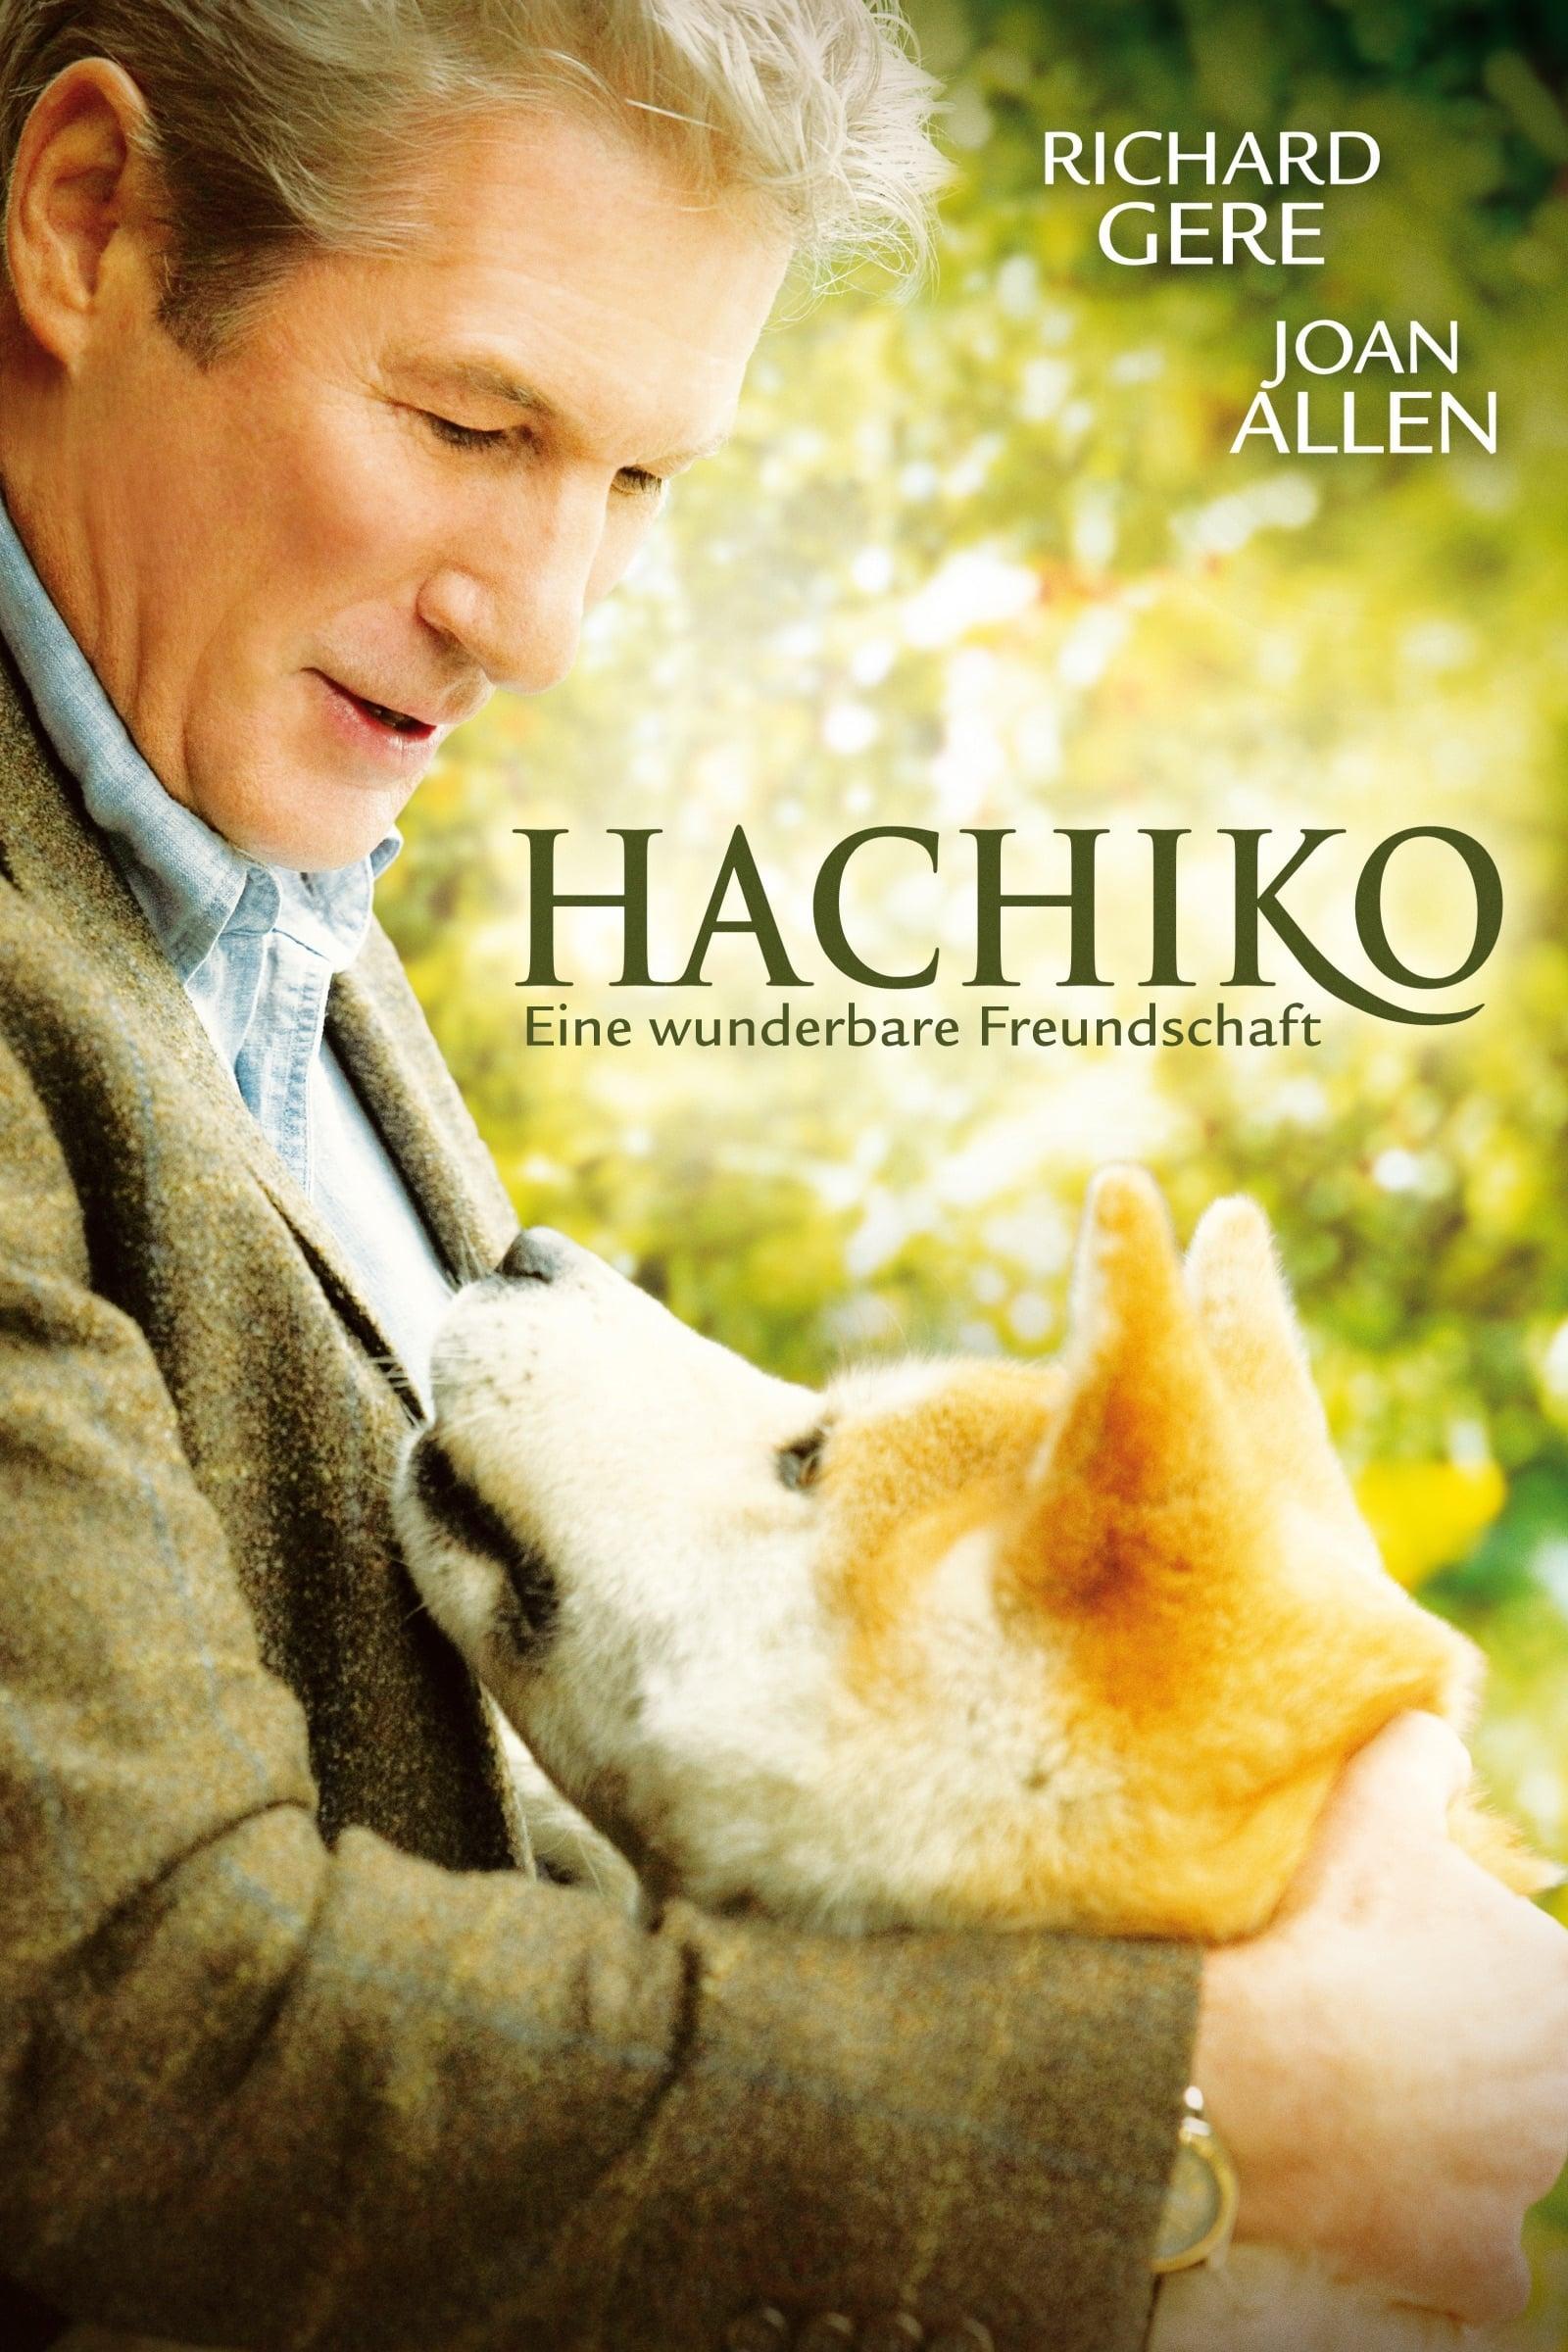 Hachiko - Eine wunderbare Freundschaft poster